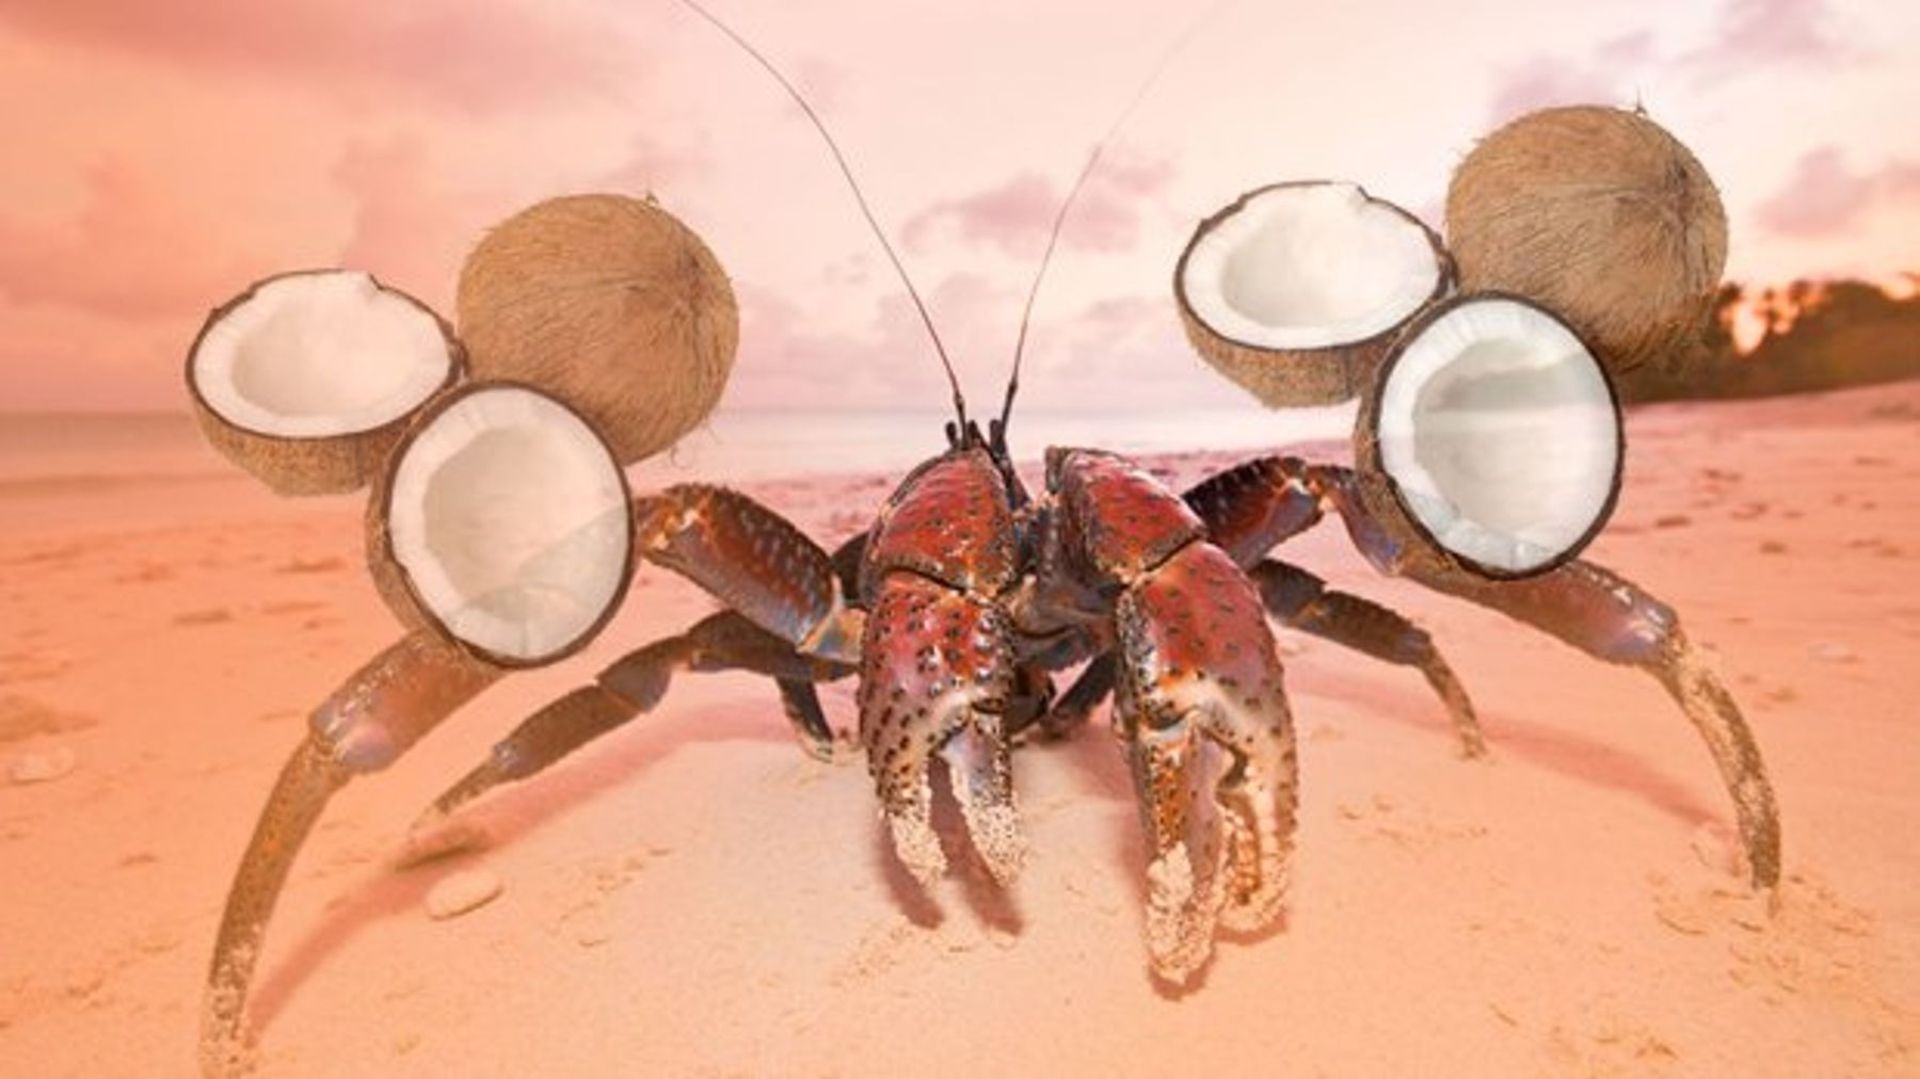 مرجع متخصصين ايران خرچنگ نارگيل / Coconut crabs